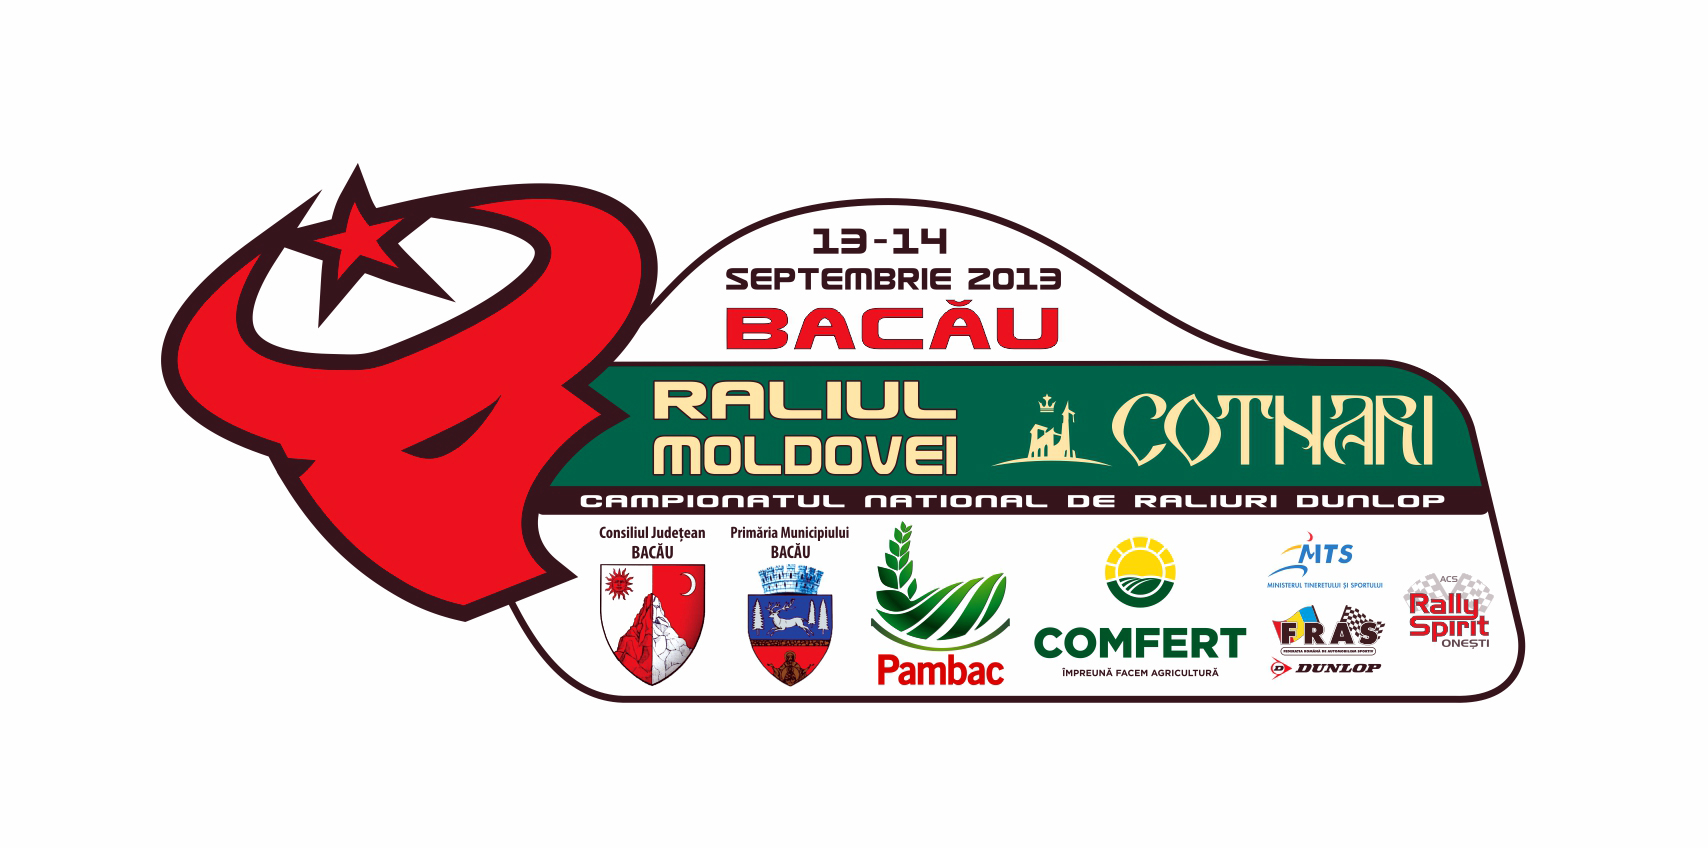 Program spectaculos pentru Raliul Moldovei Cotnari Bacau 2013